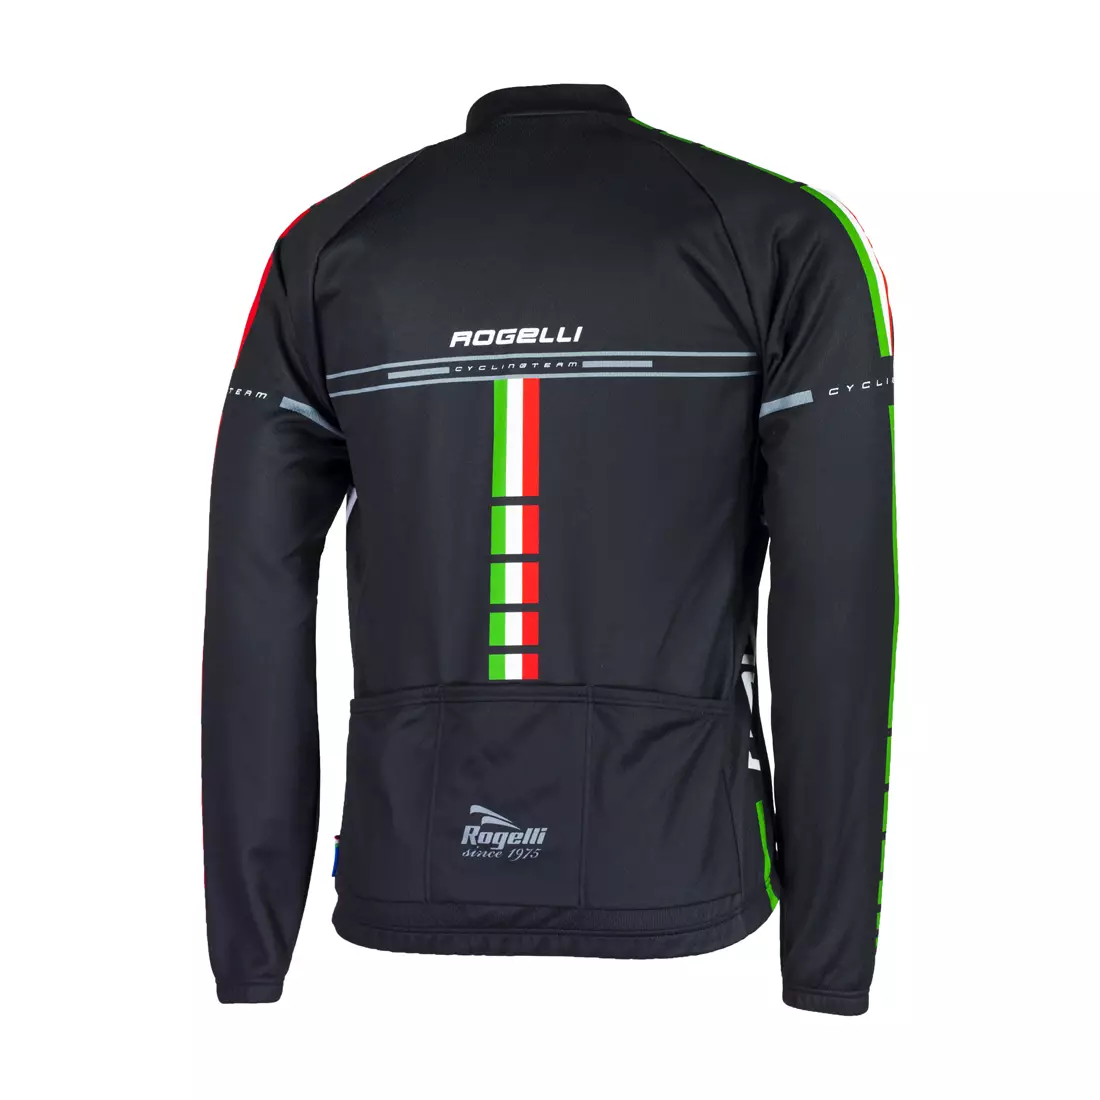 ROGELLI BIKE TEAM - Herren-Radsport-Sweatshirt 001.967, Farbe: Schwarz